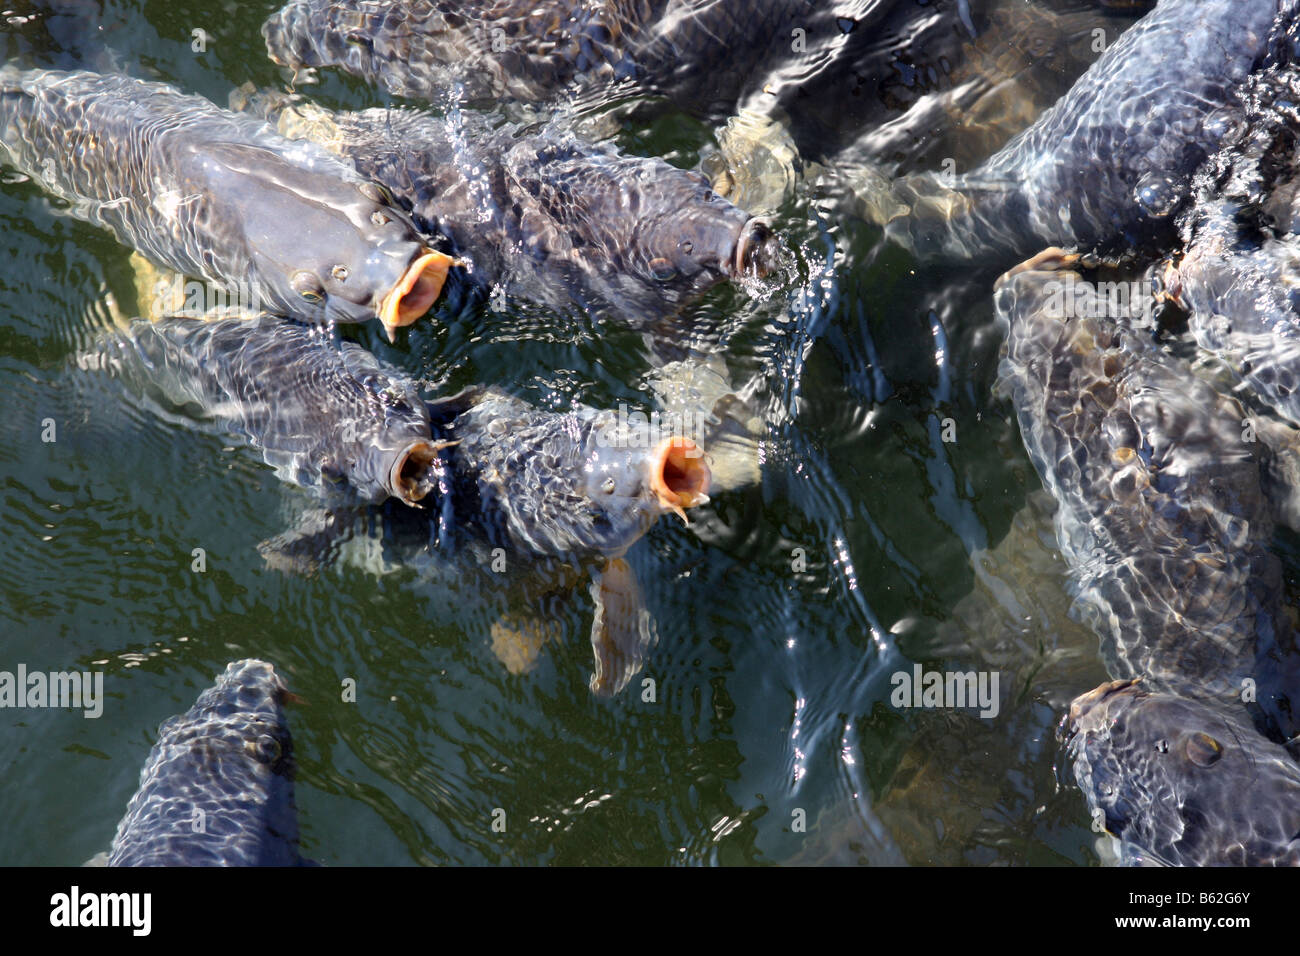 Carpa in superficie in cerca di cibo per i pesci Foto Stock